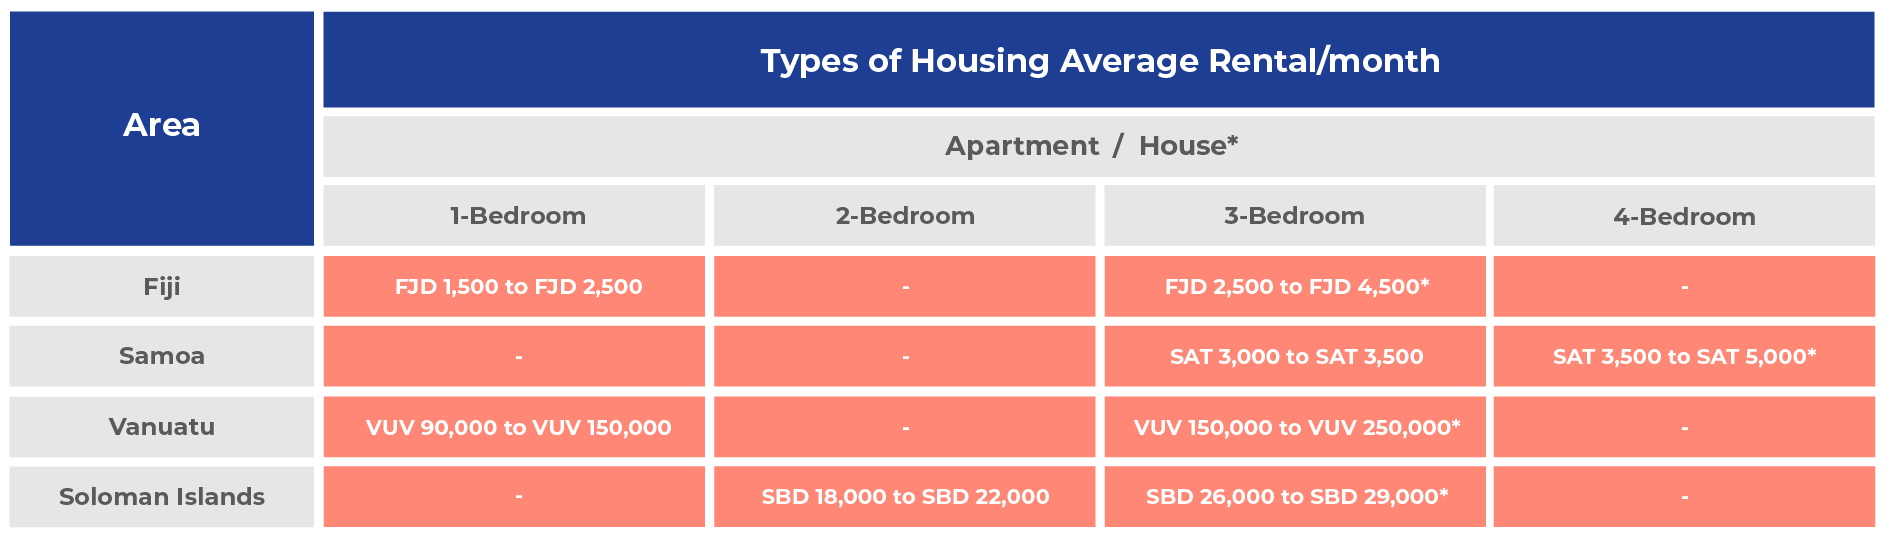 Types of Housing Average Rental/Month